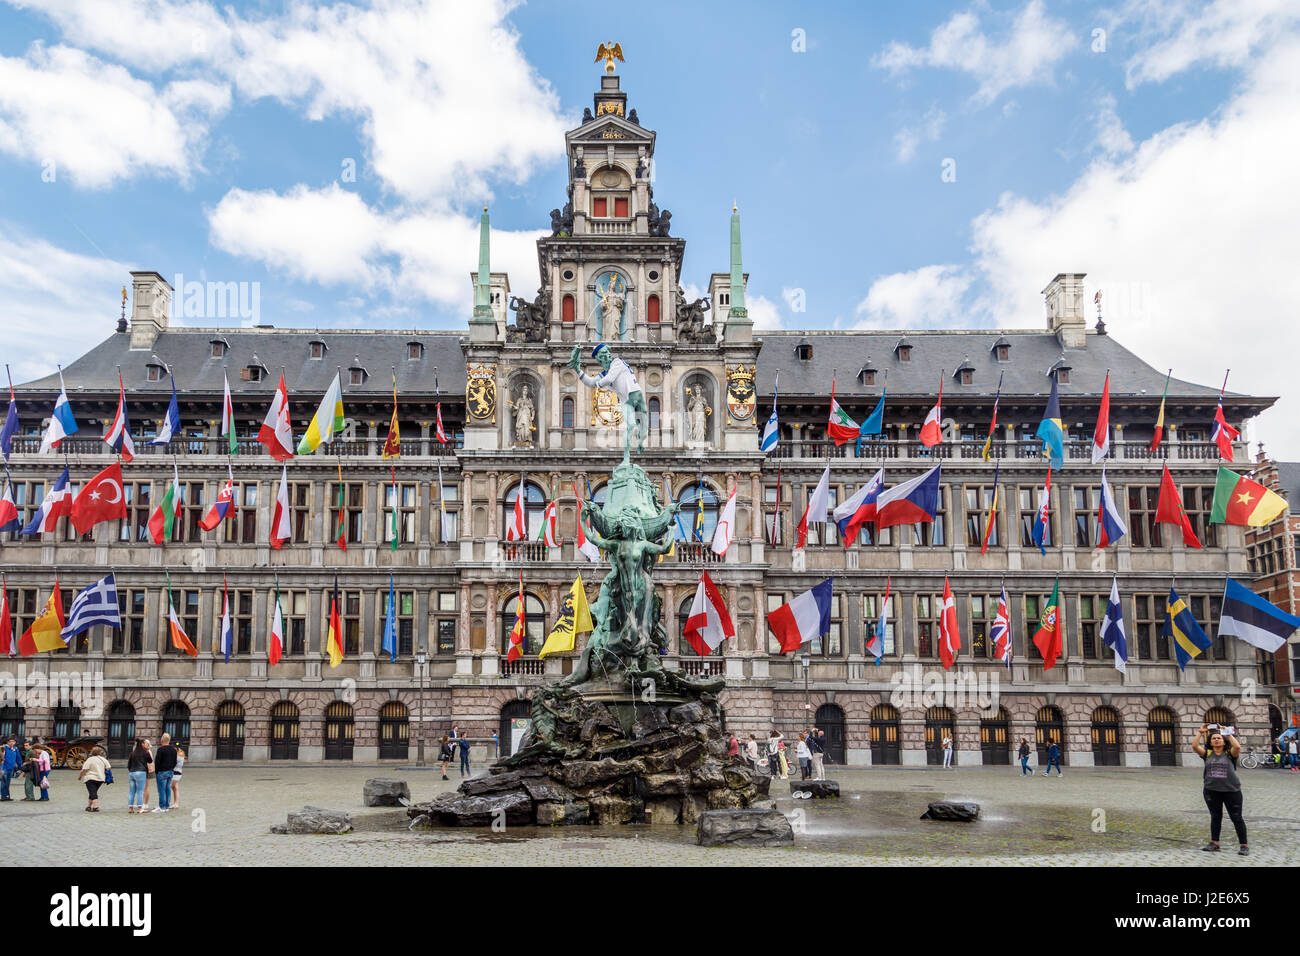 Anversa, Belgio - luglio 5, 2016 : la città storica di hall e la vecchia città di Anversa con architettura elegante. Anversa è la capitale della regione di Foto Stock